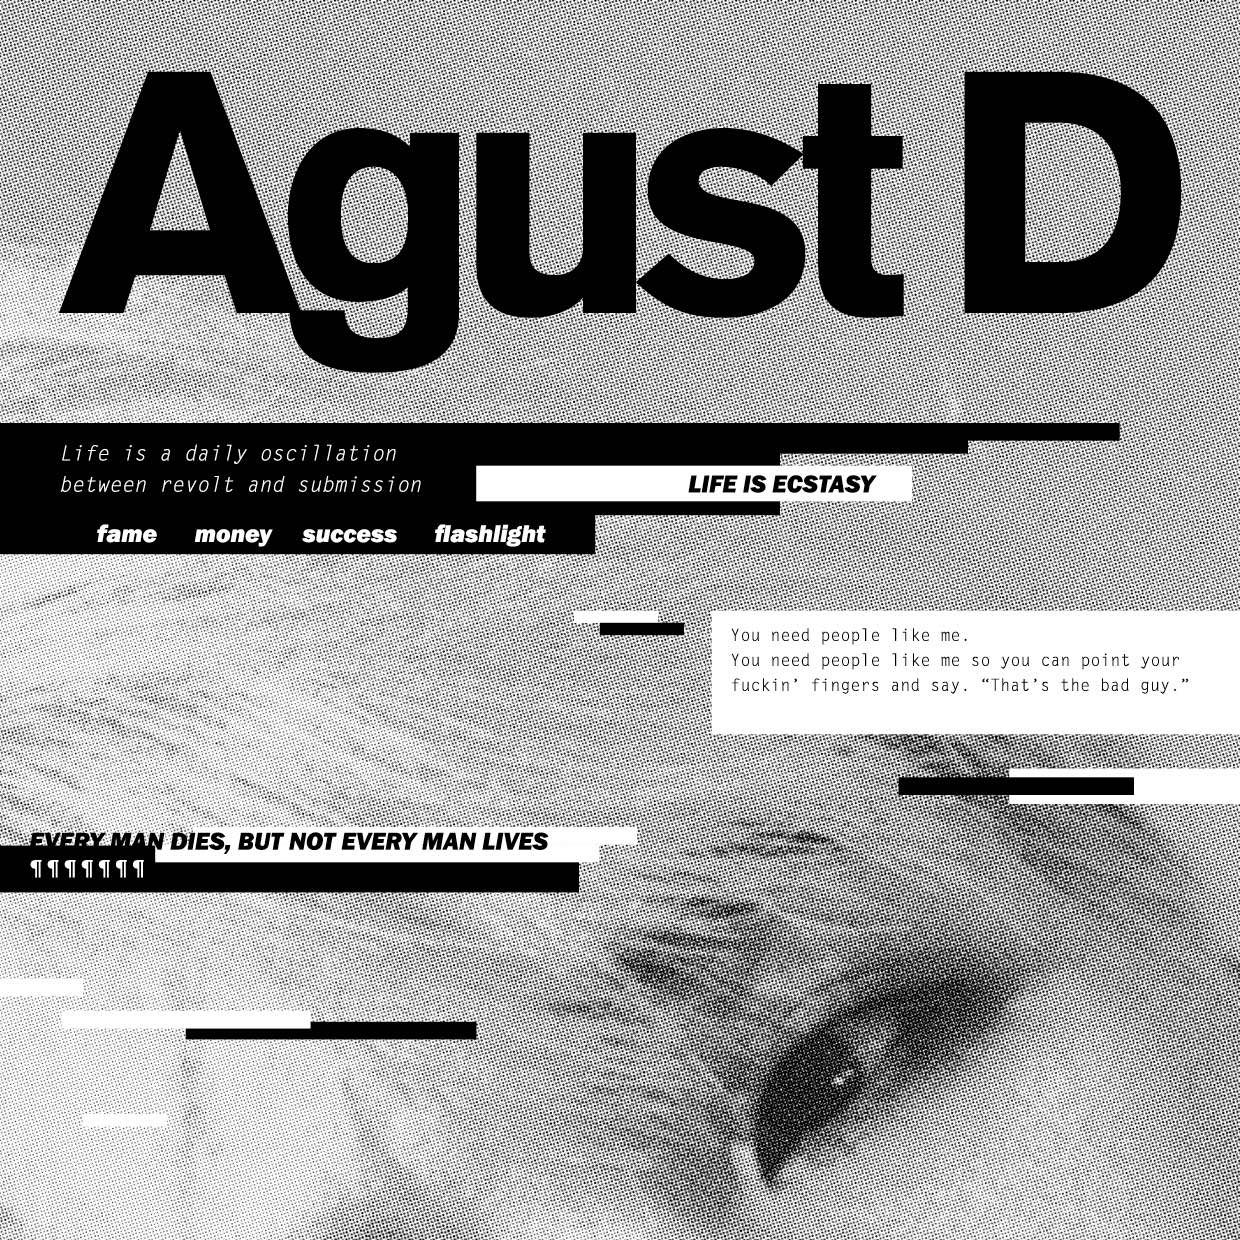 Imagem do álbum Agust D do(a) artista Agust D